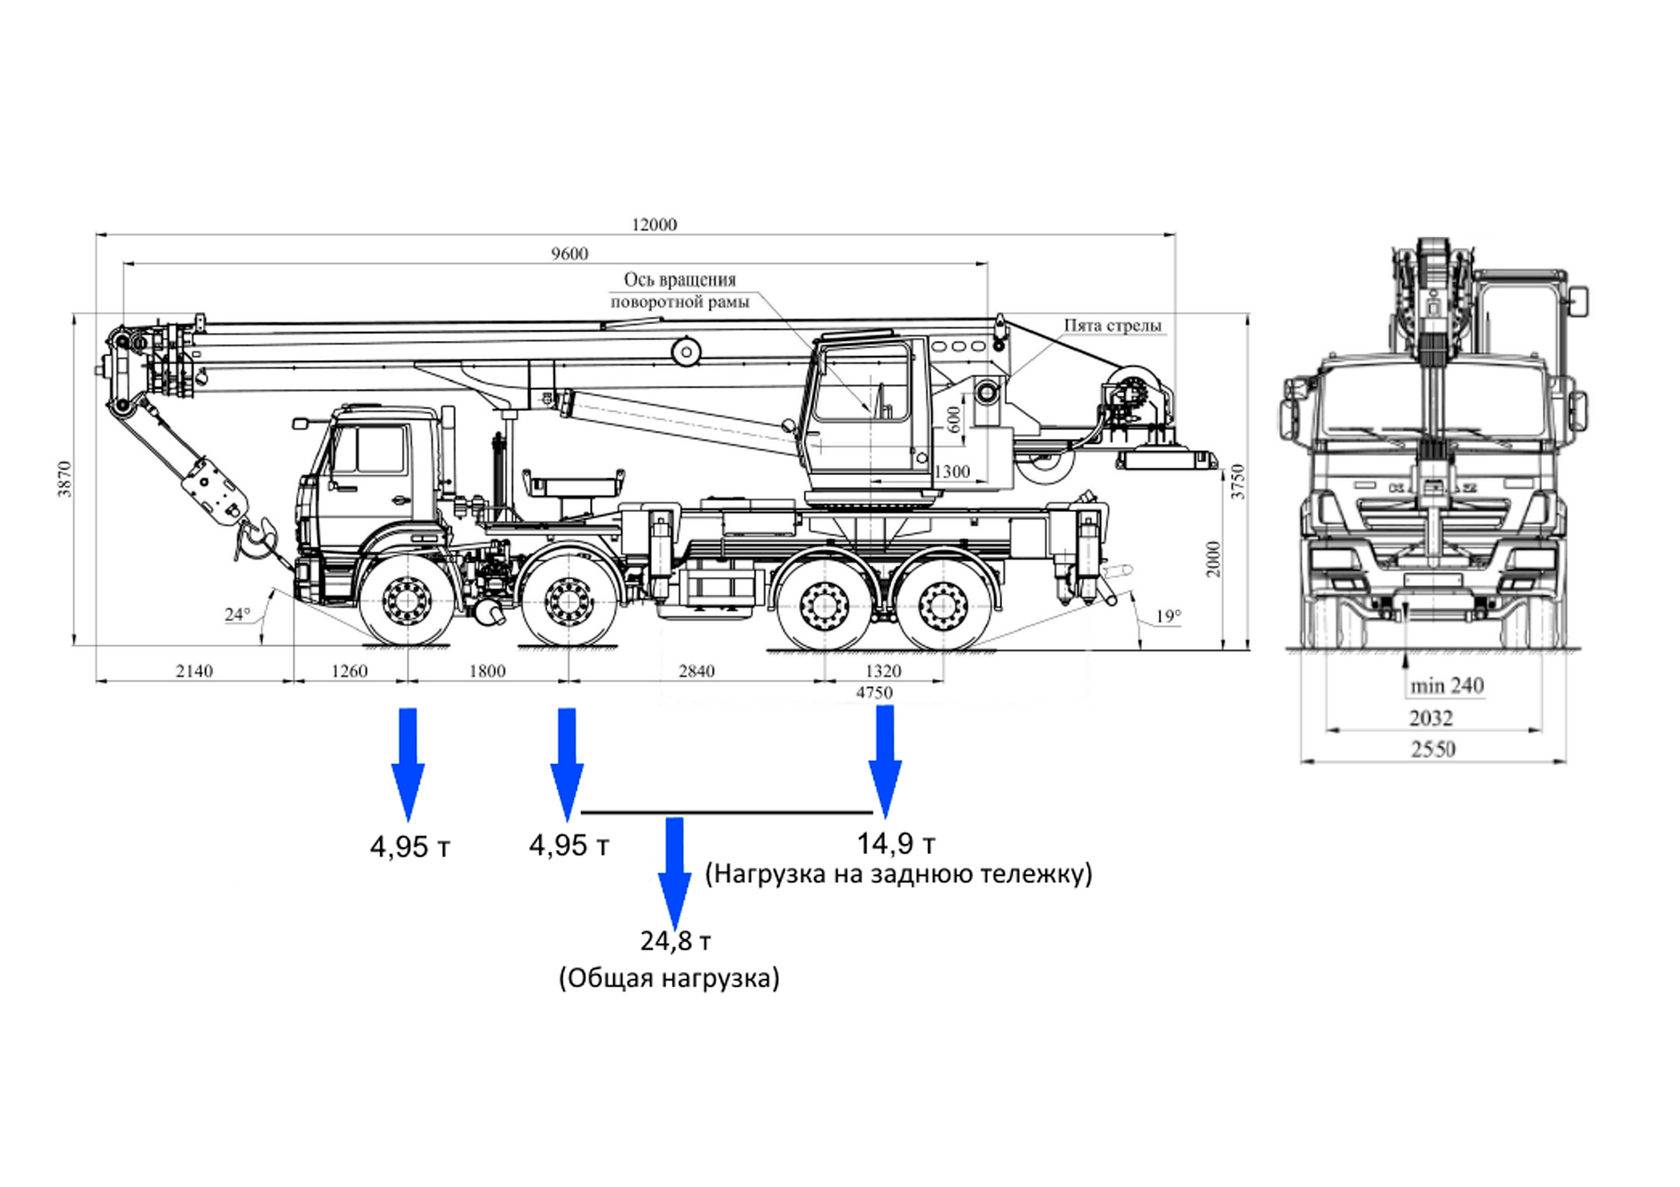 Кран галичанин 25 тонн на базе камаз - технические характеристики автокрана